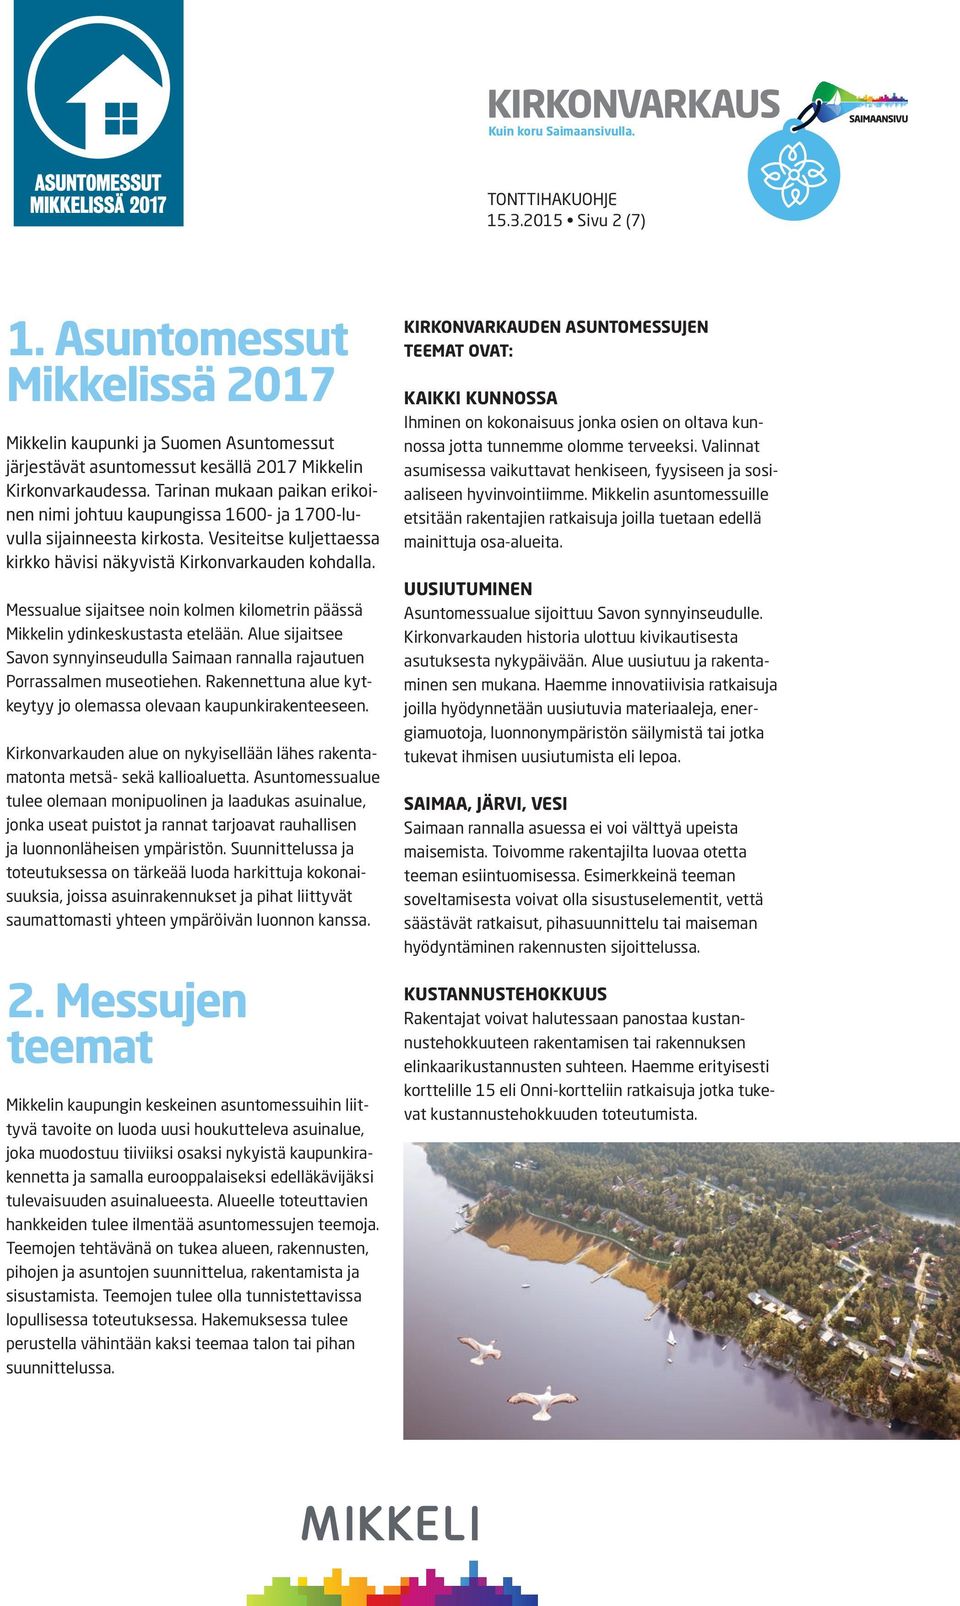 Messualue sijaitsee noin kolmen kilometrin päässä Mikkelin ydinkeskustasta etelään. Alue sijaitsee Savon synnyinseudulla Saimaan rannalla rajautuen Porrassalmen museotiehen.